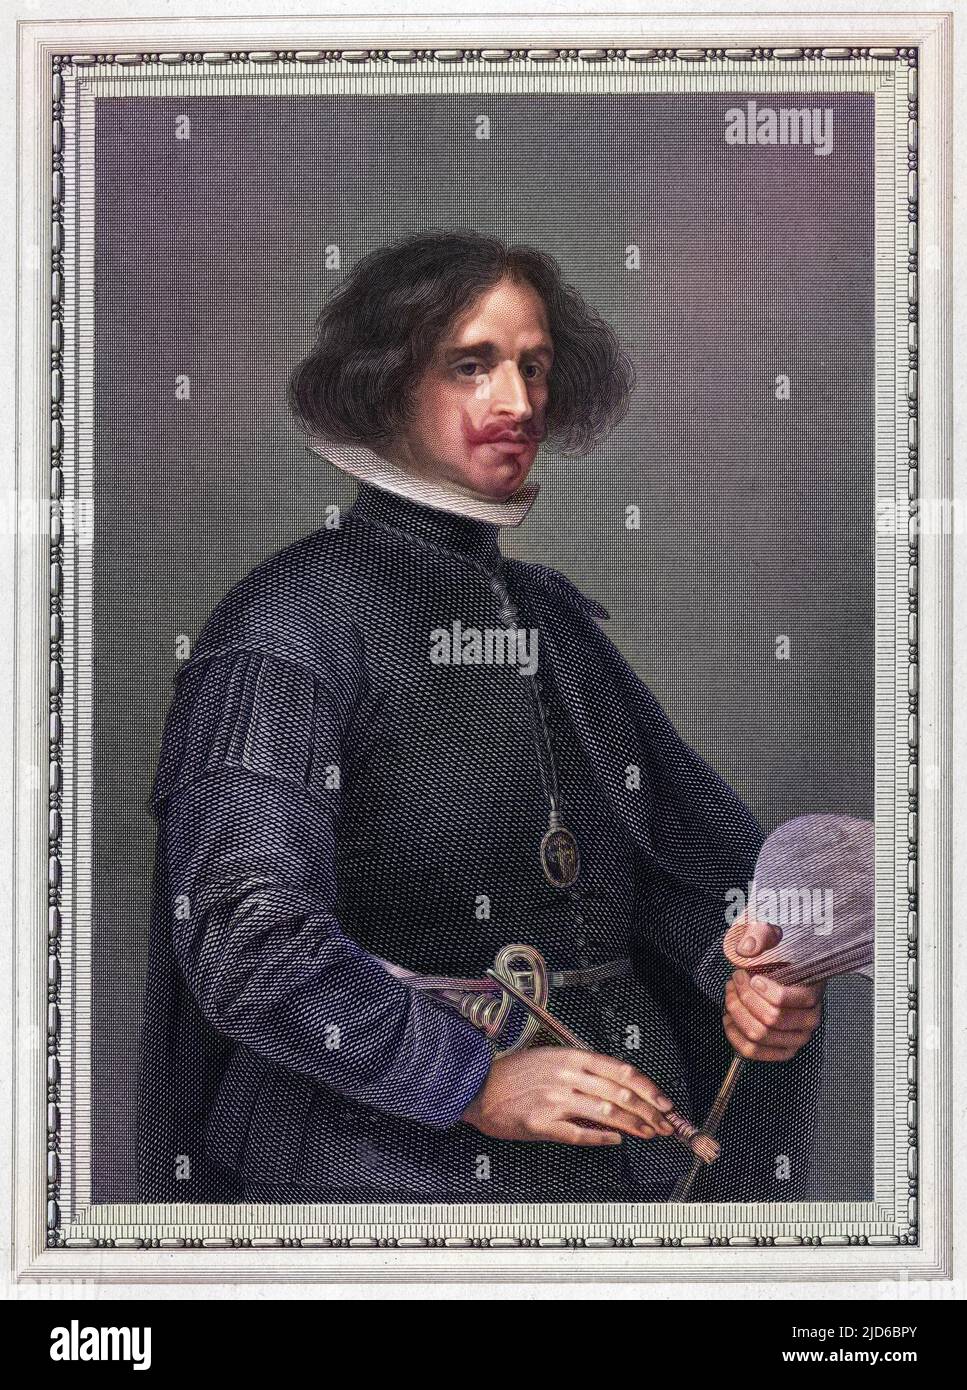 BARTOLOME ESTEBAN MURILLO artiste espagnol tenant le pinceau et la palette. Version colorisée de : 10166879 Date: 1617 - 1688 Banque D'Images